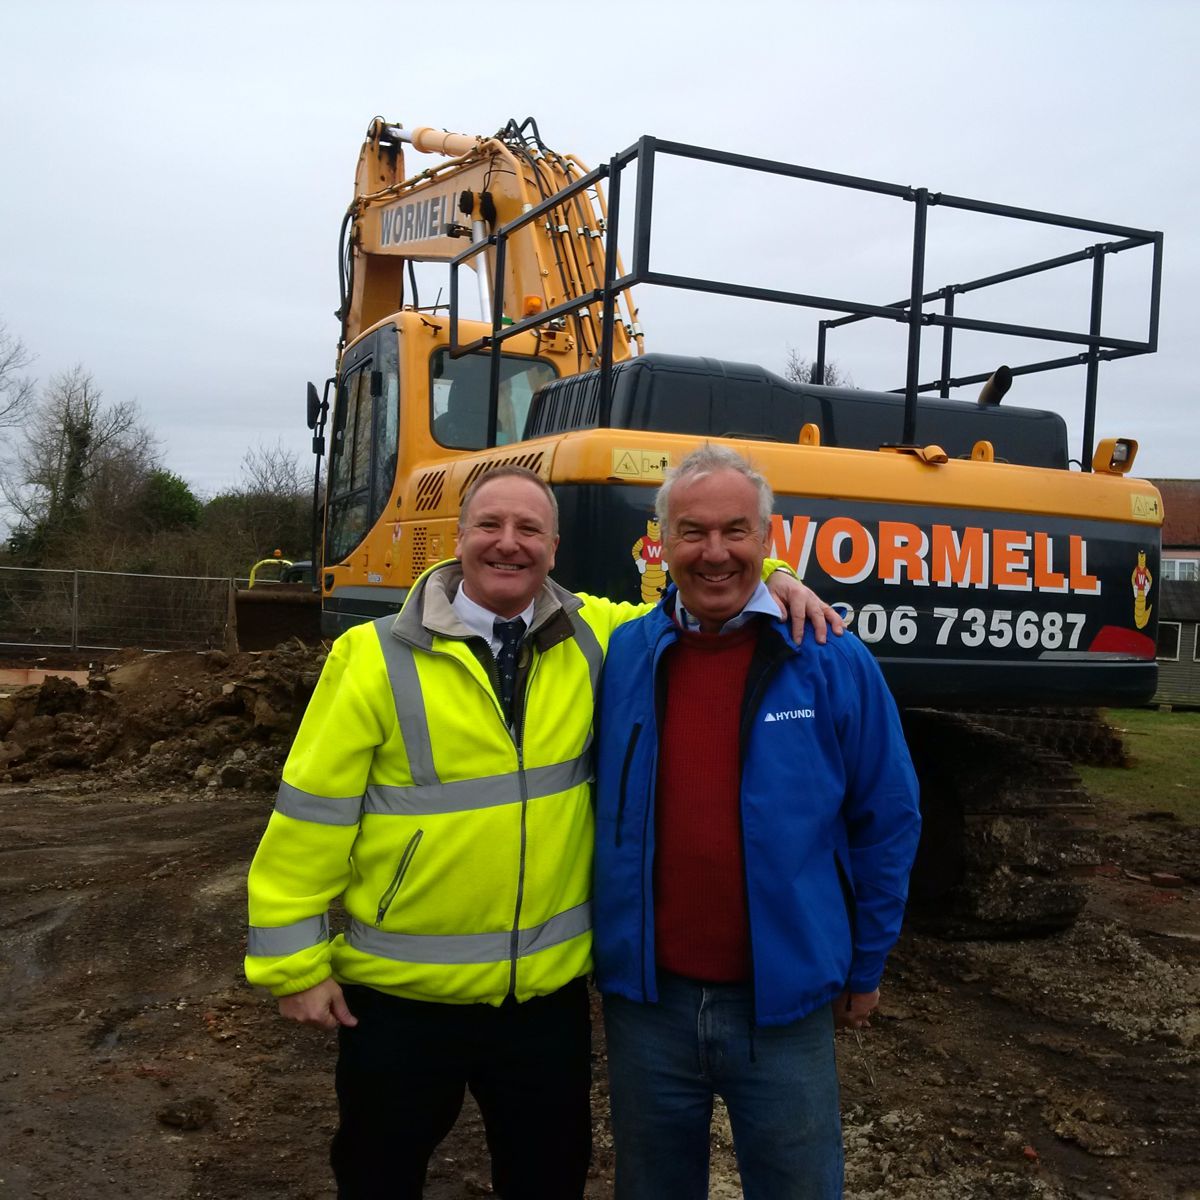 Andy Parnham and Robert Pegram - Steve Wormwell Hyundai Customers